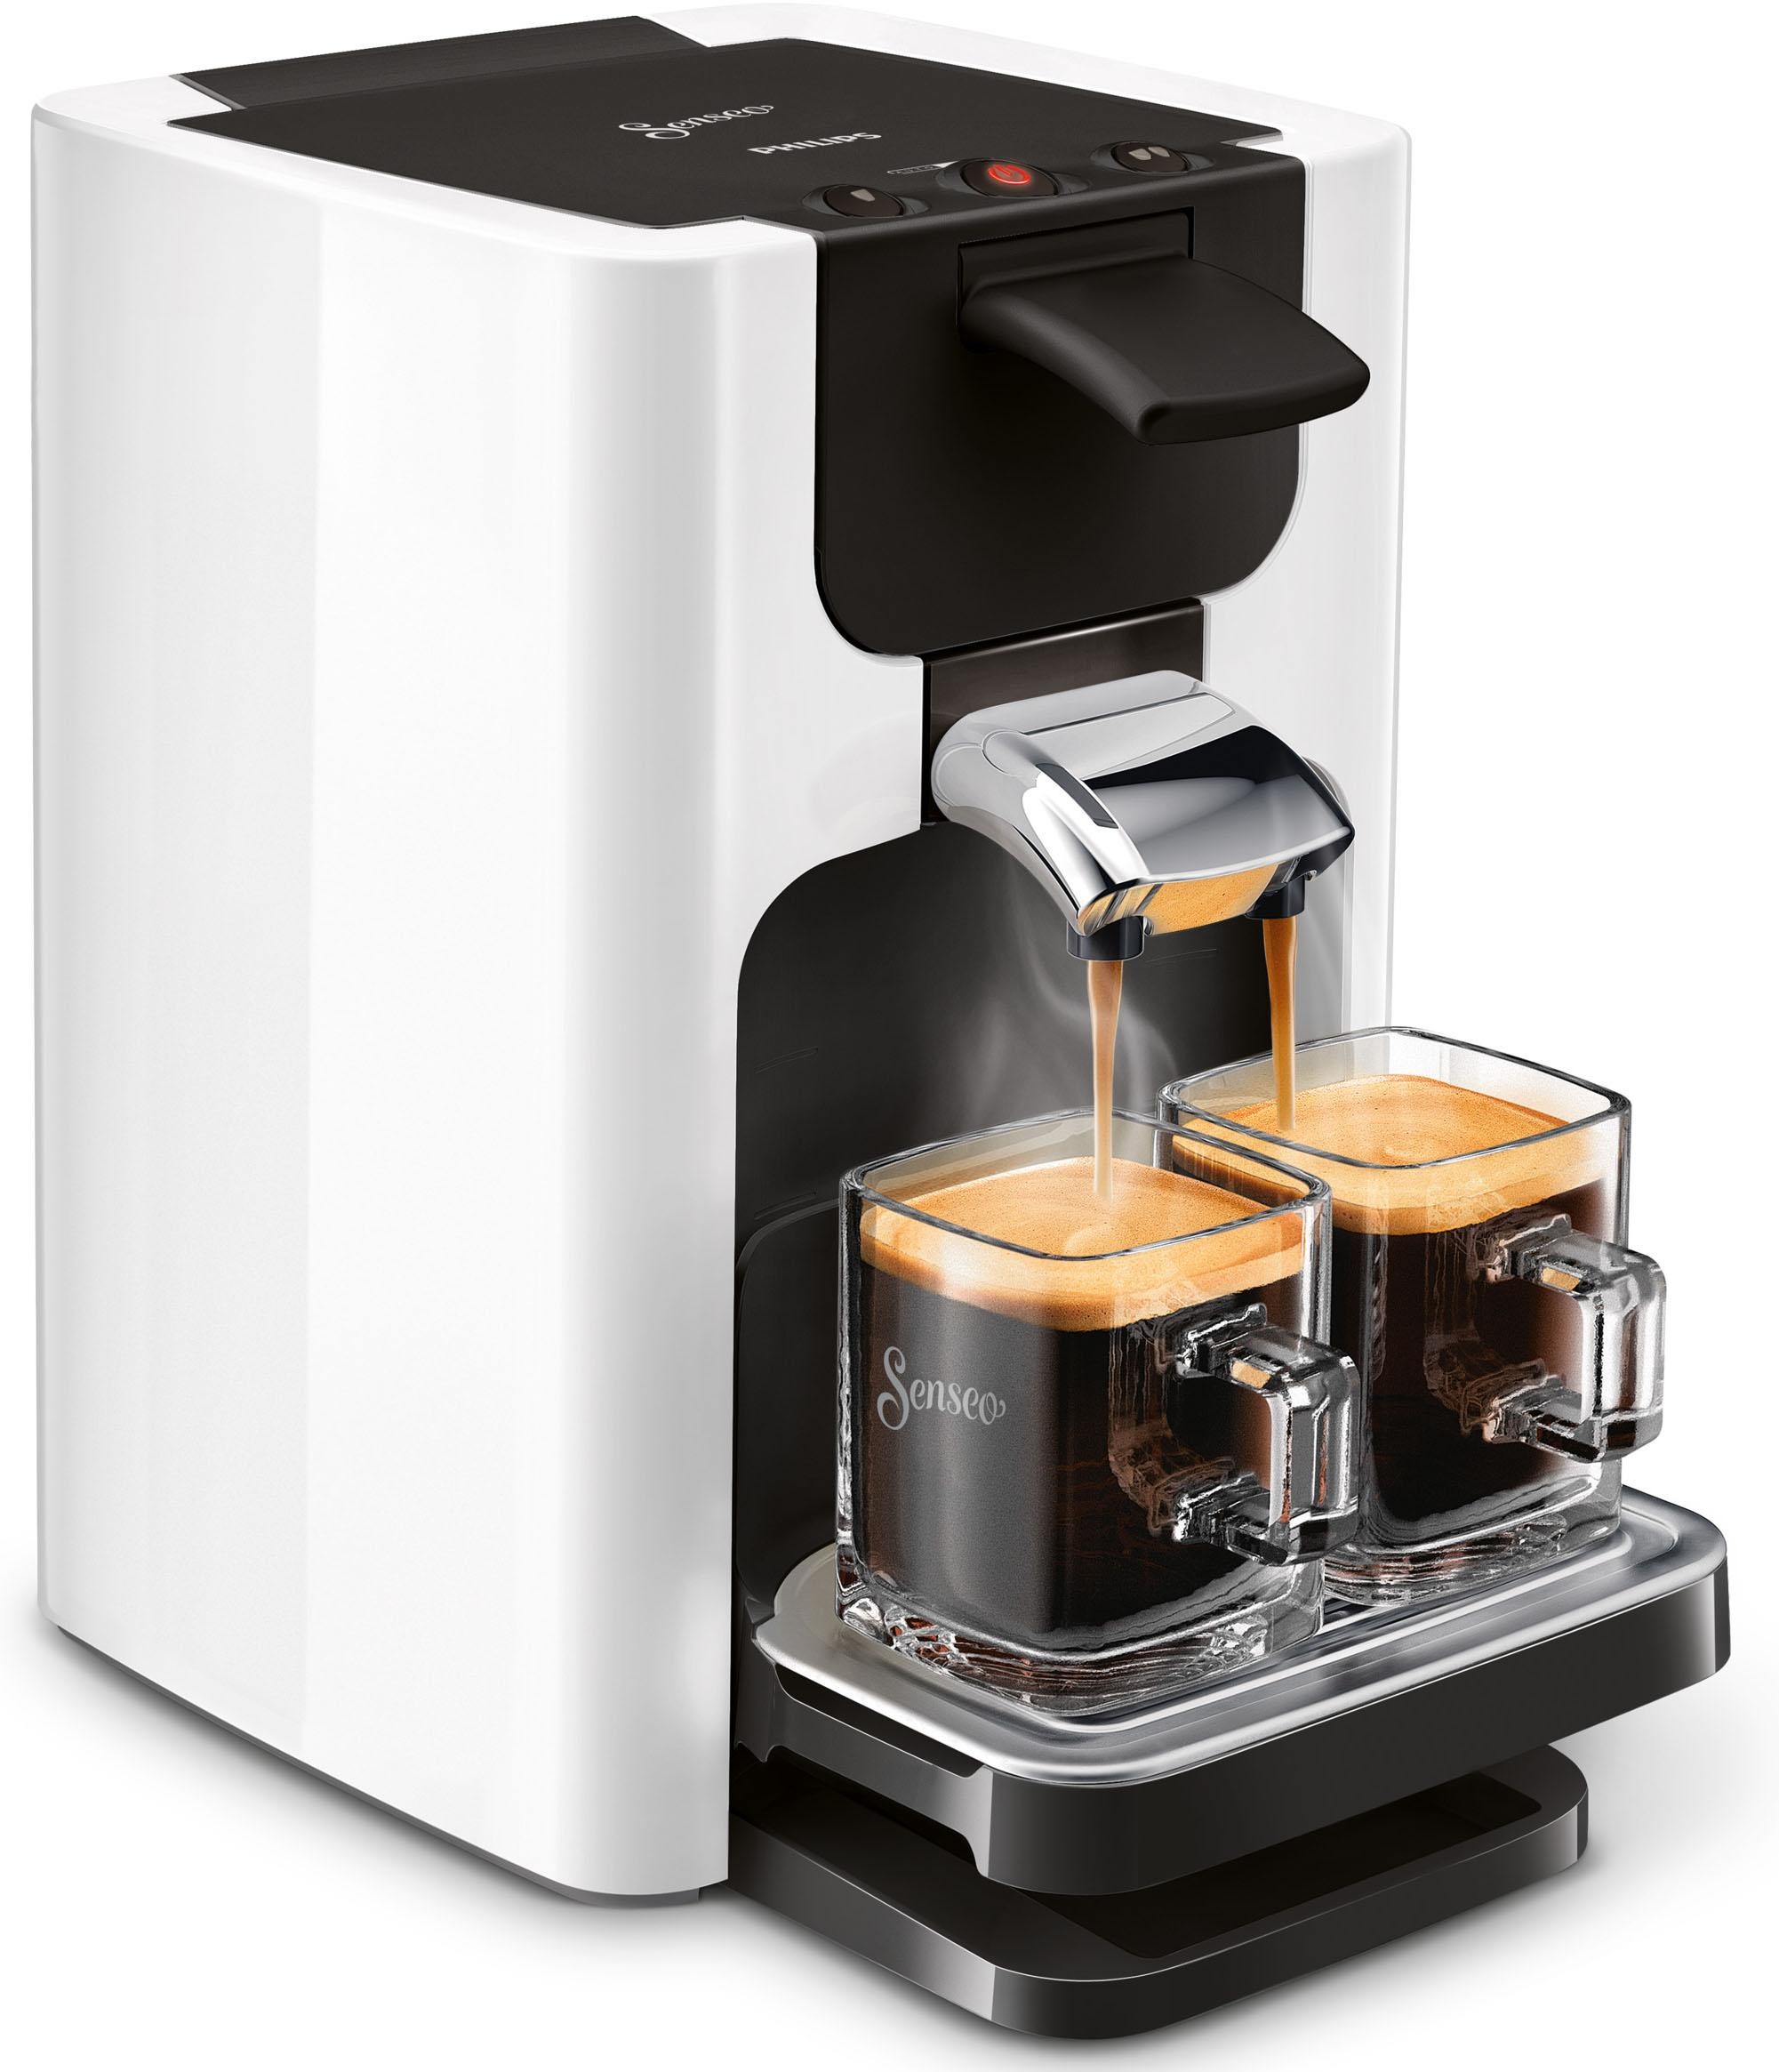 Kaffeepadmaschine inkl. »Quadrante Gratis-Zugaben OTTO kaufen Wert von € Senseo bei Philips UVP im jetzt 23,90 HD7865/00«,